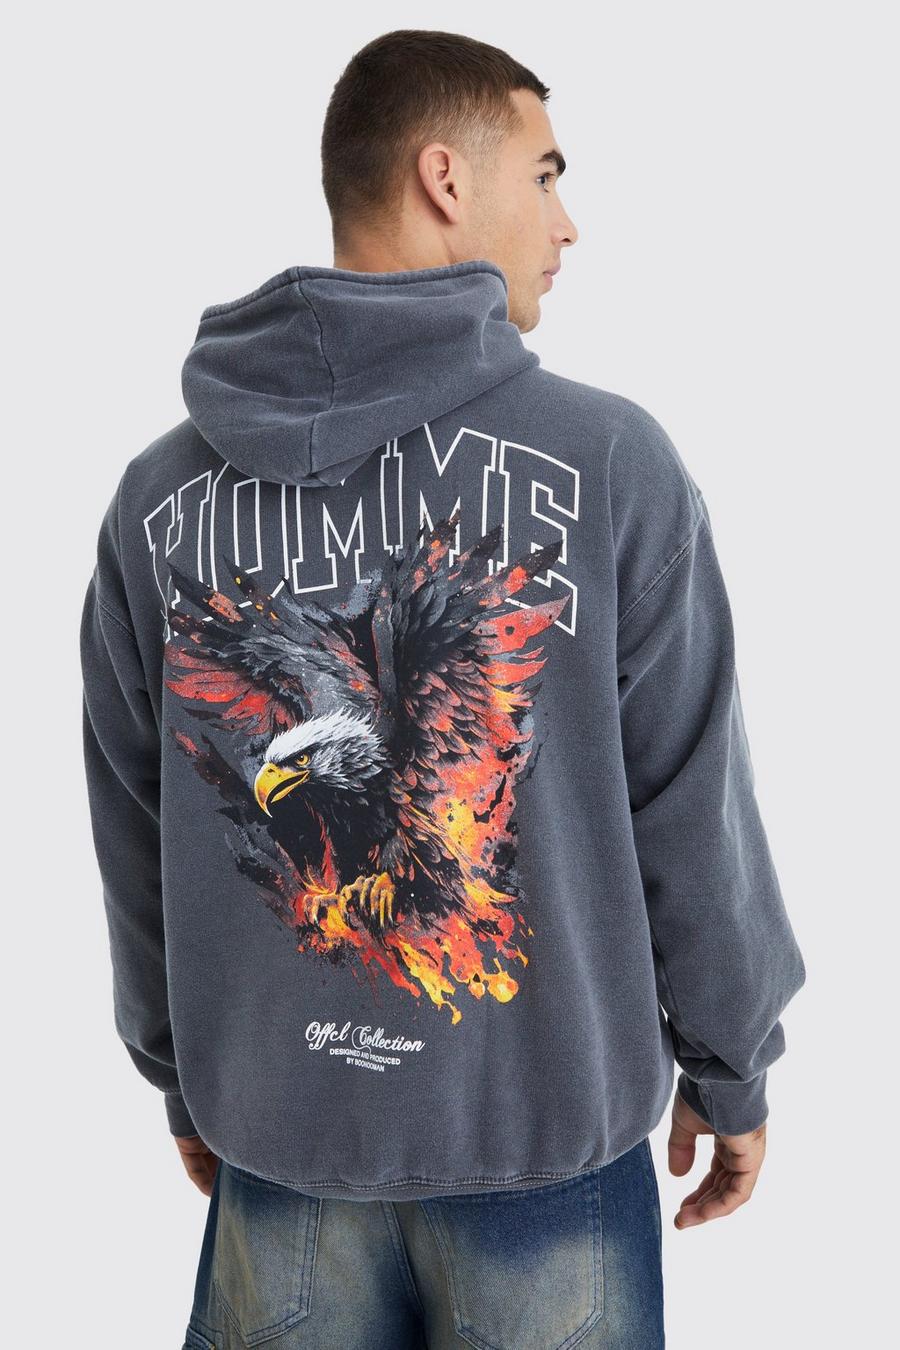 Sudadera oversize sobreteñida con capucha y estampado gráfico Homme de águila, Charcoal gris